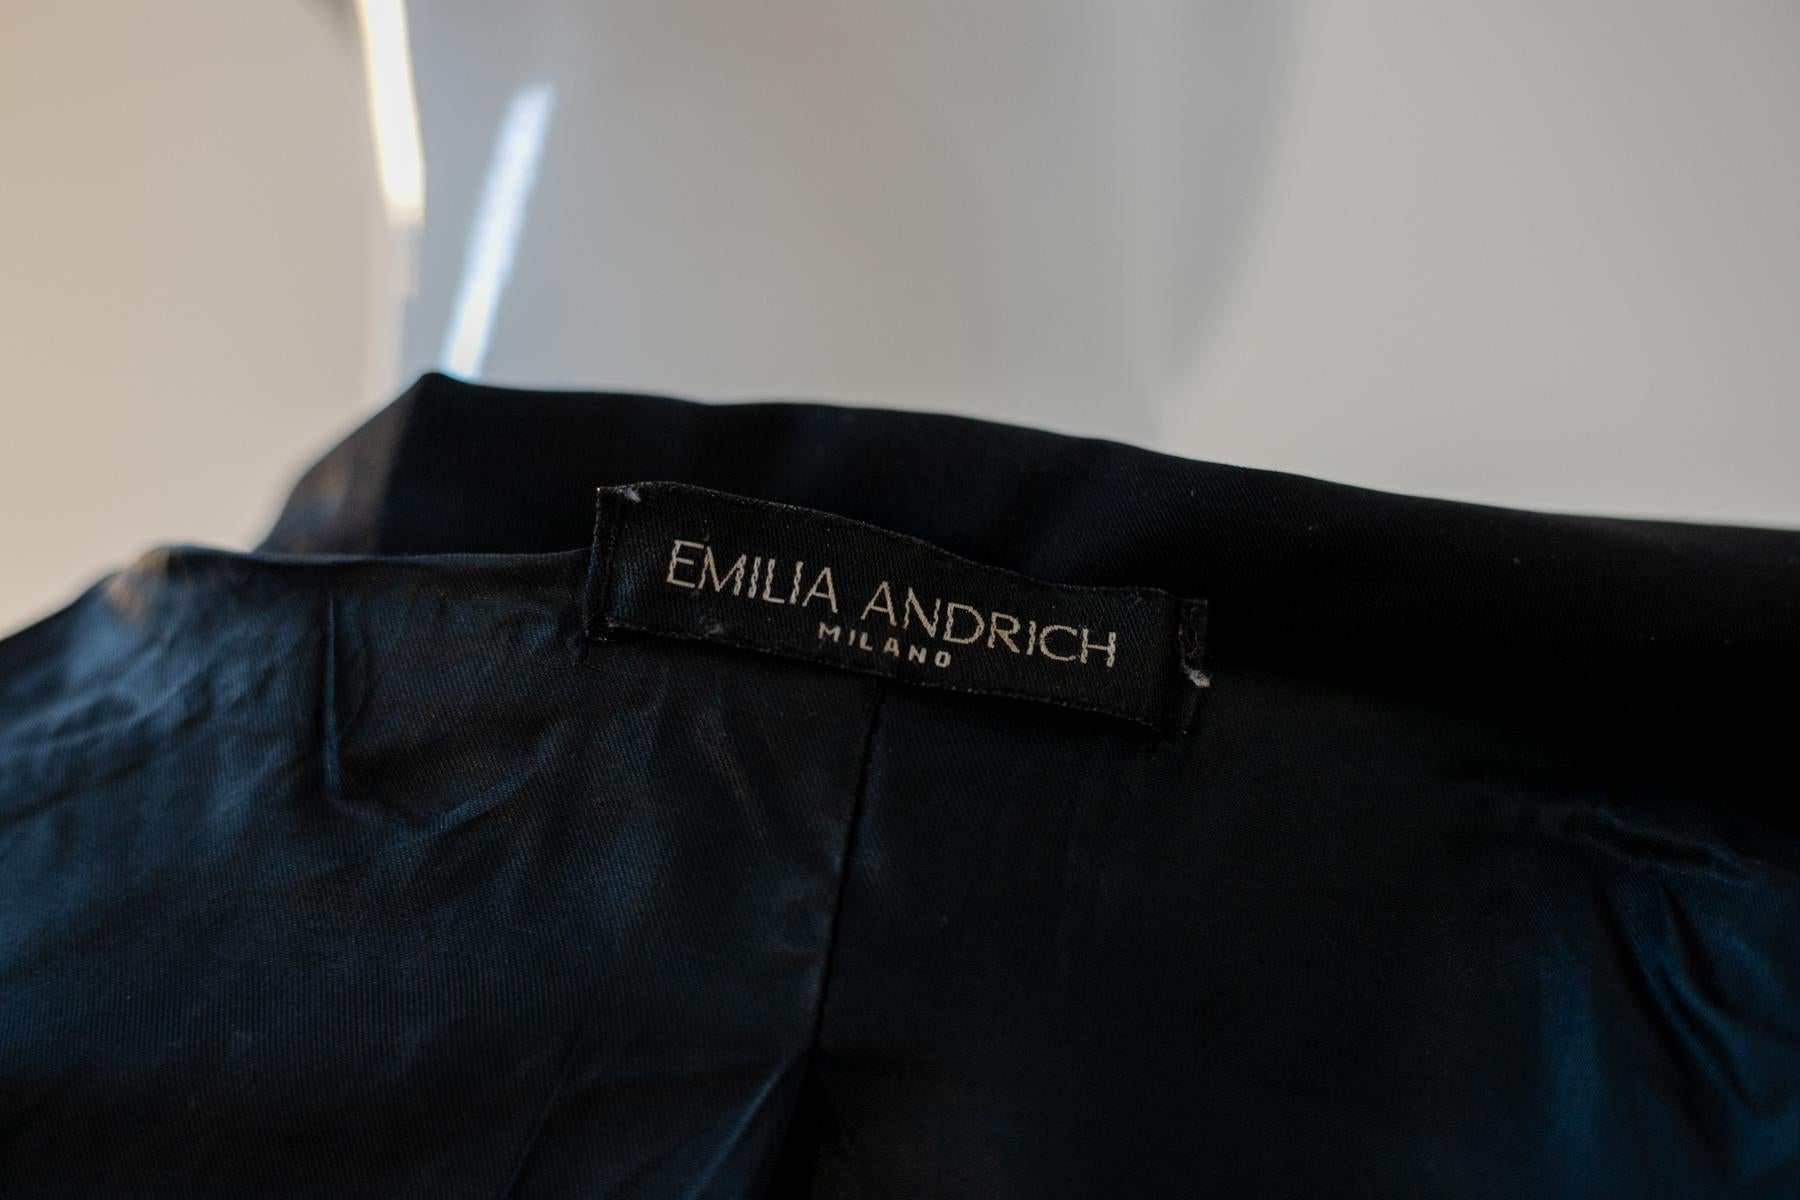 Irrésistible trench noir à double boutonnage par Emilia Andrich des années 2000, fabriqué en Italie. ÉTIQUETTE ORIGINALE.
Le trench-coat est entièrement réalisé en coton noir, avec un col avec une longue et profonde coupe de liste, qui se connecte à